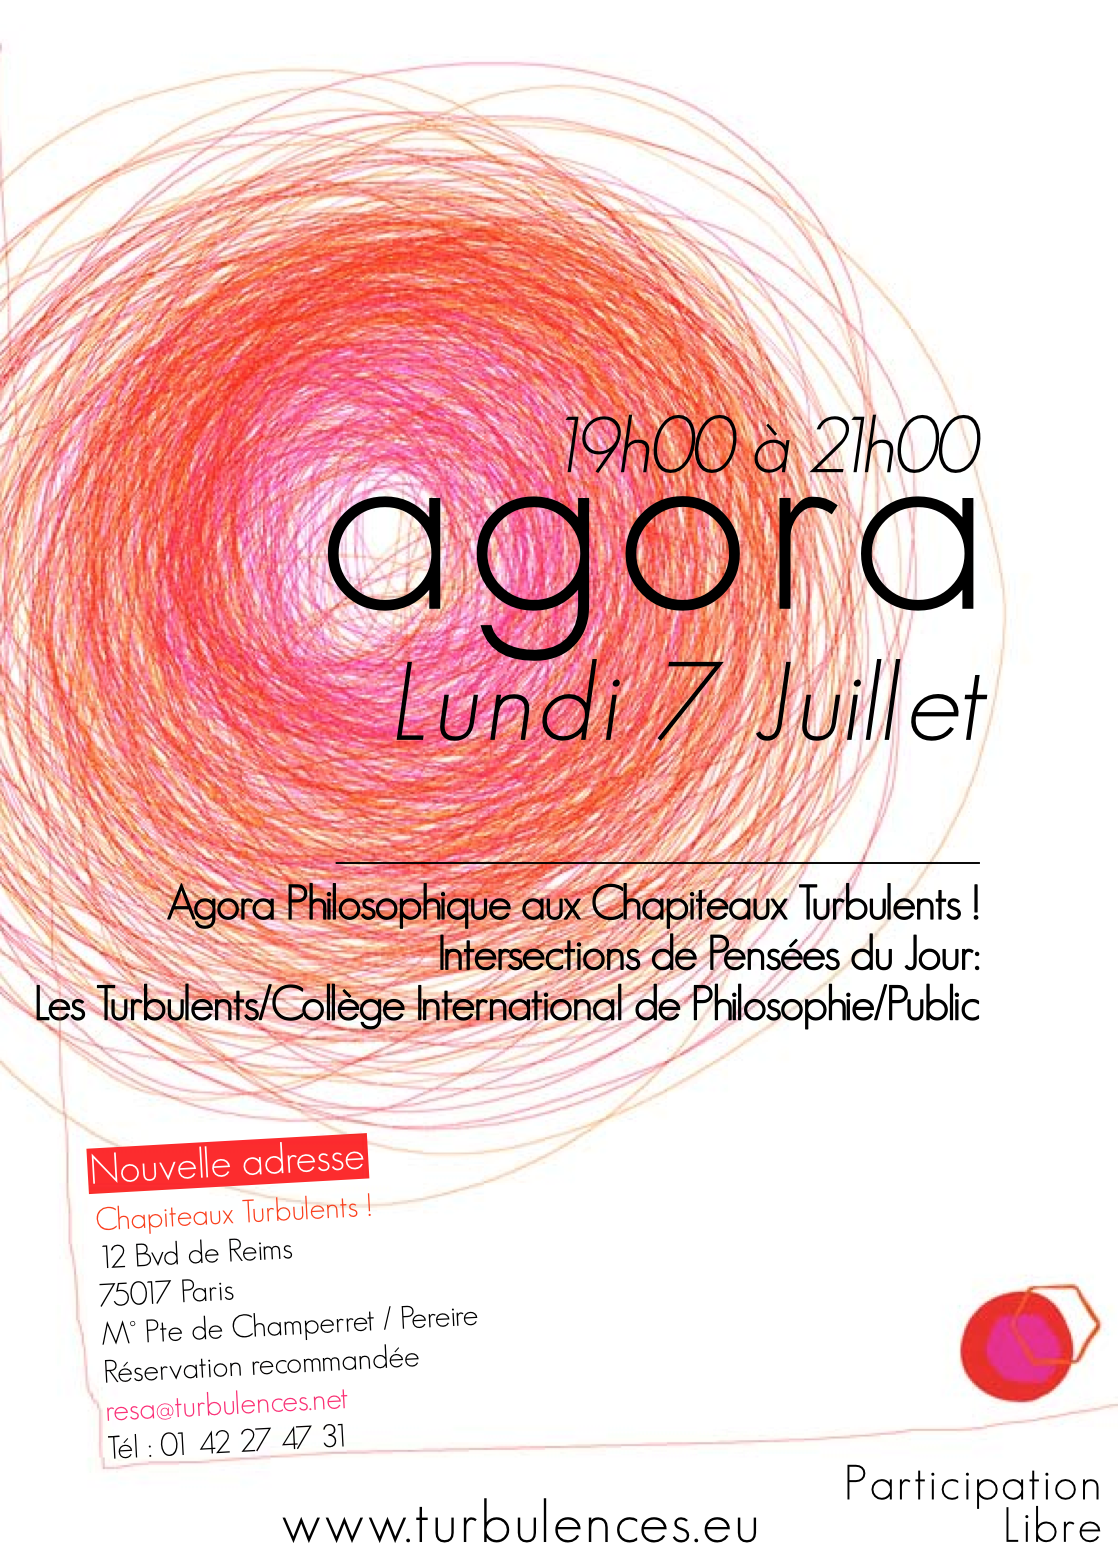 Agora philosophique le 7 juillet de 19h à 21h